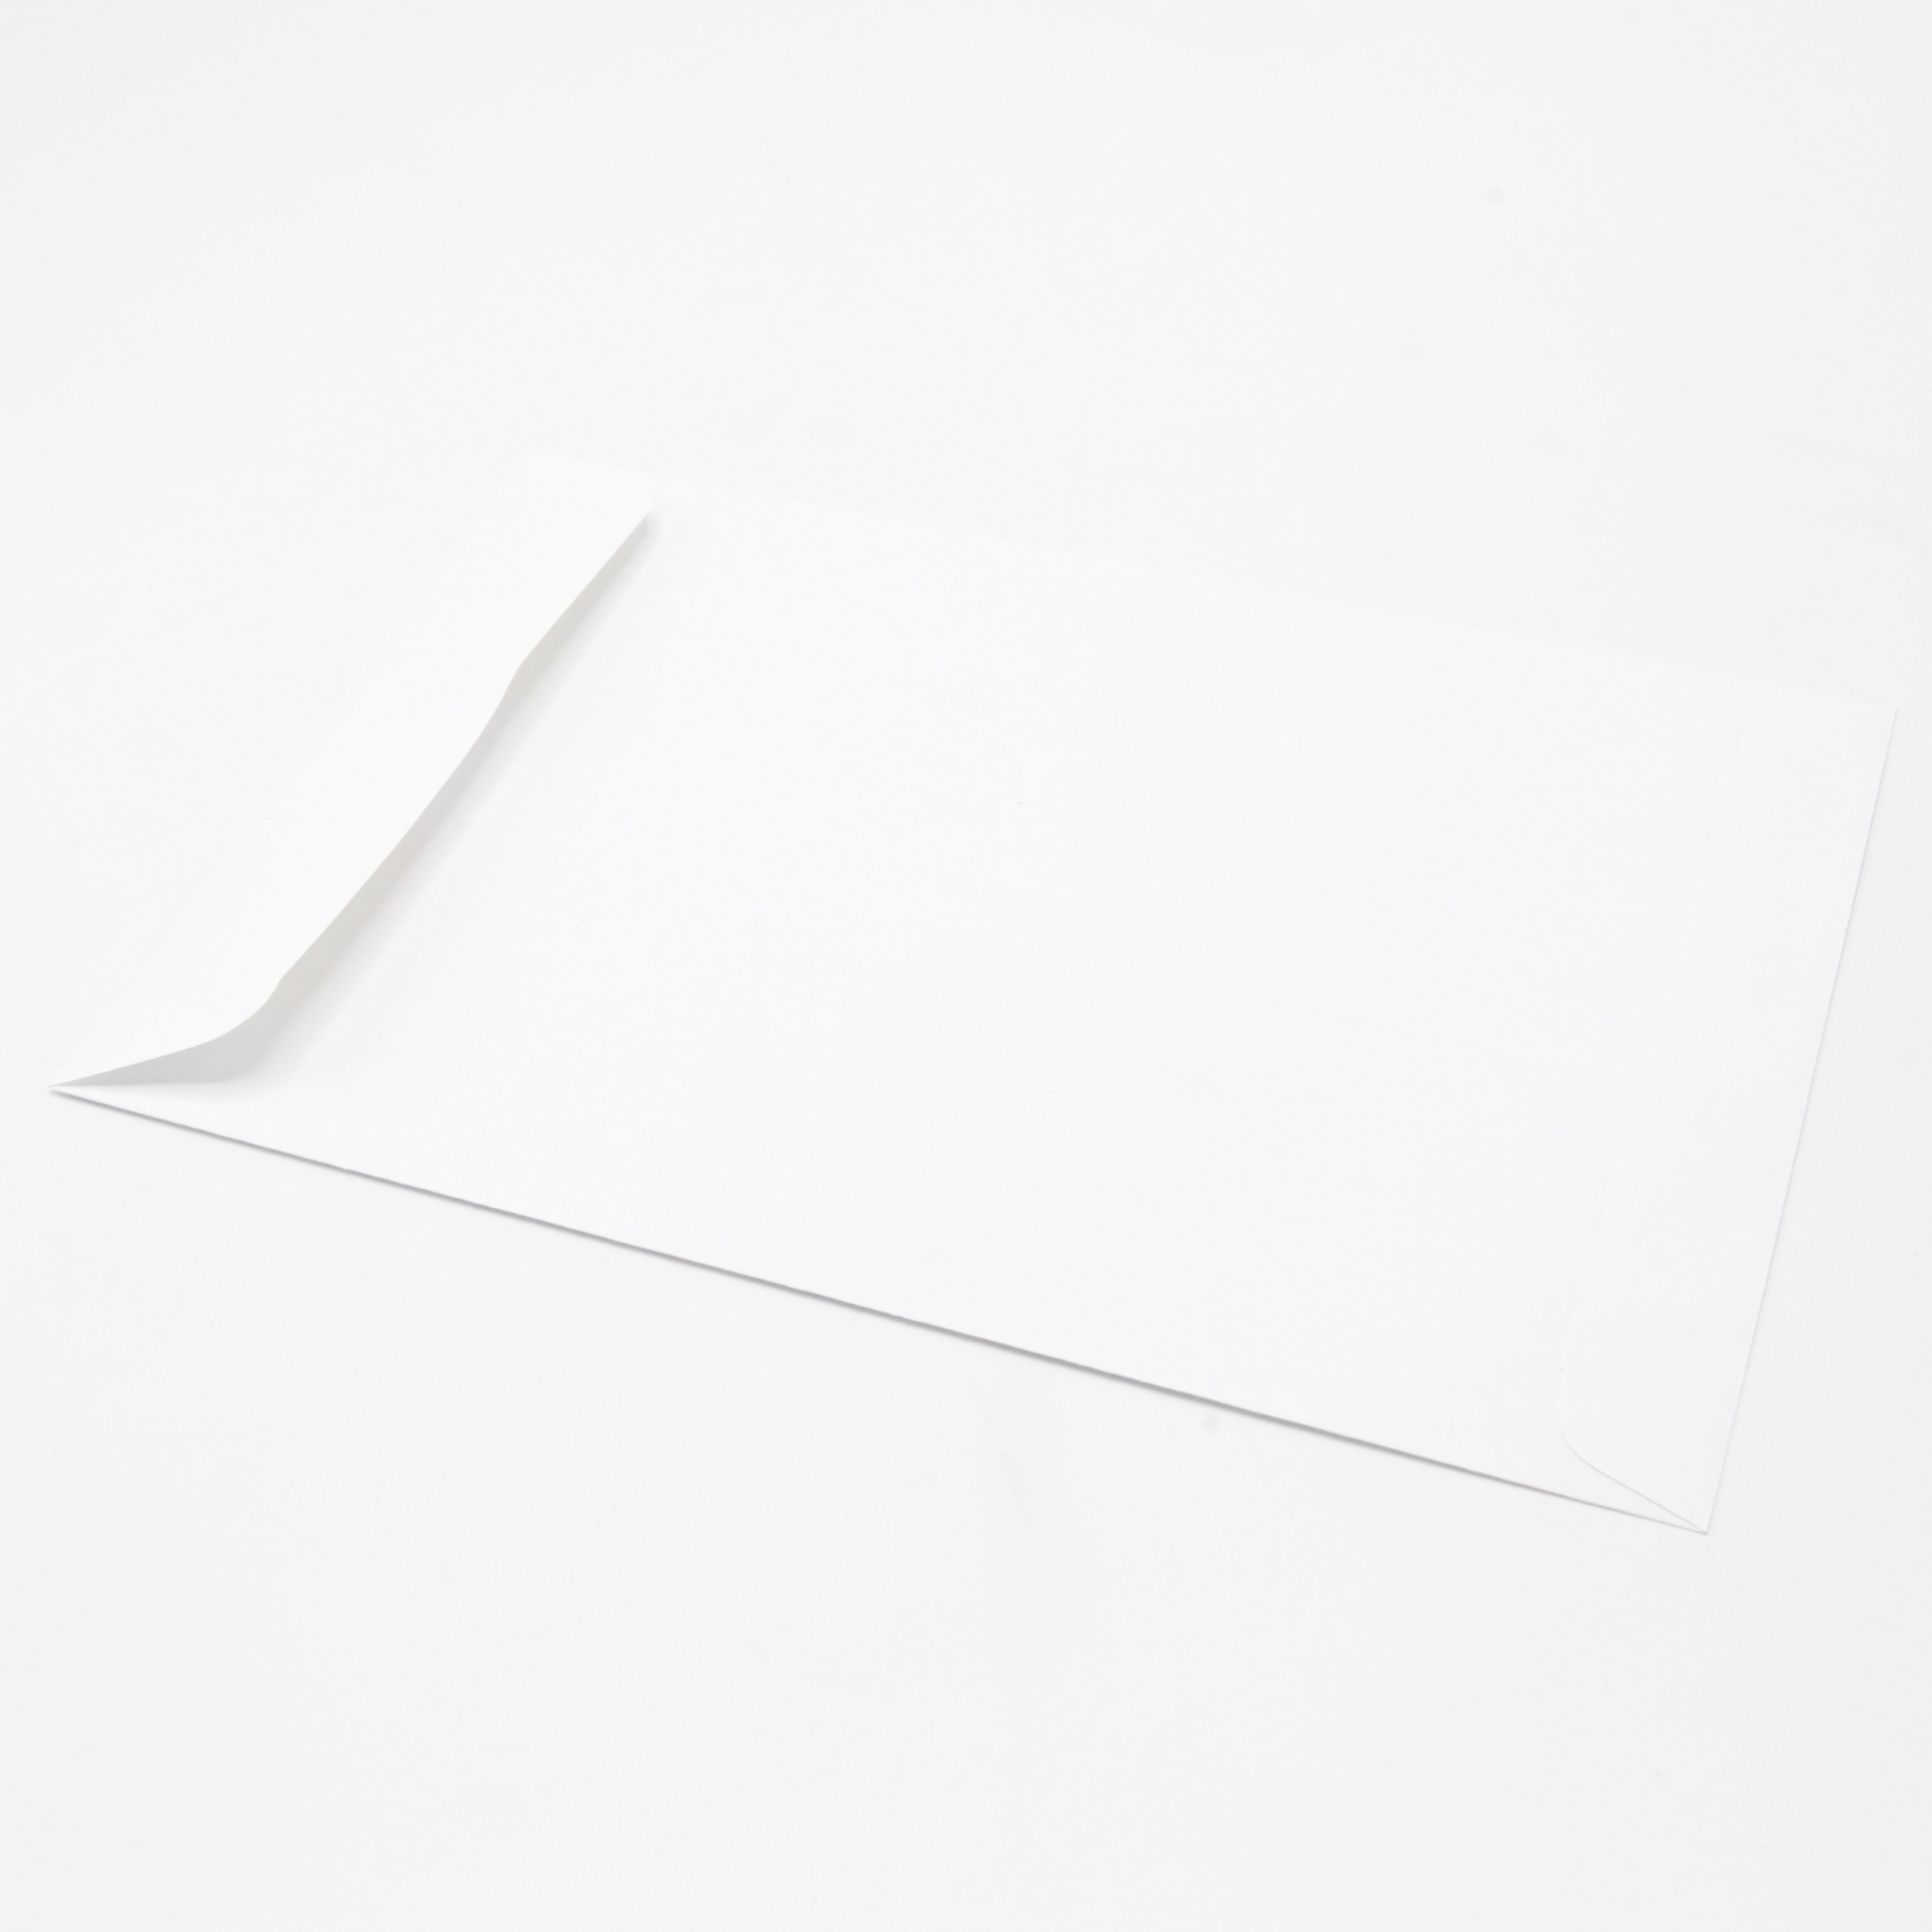 6 1/2 x 9 1/2 Catalog Envelopes - 28lb WHITE WOVE - Peel to Seal